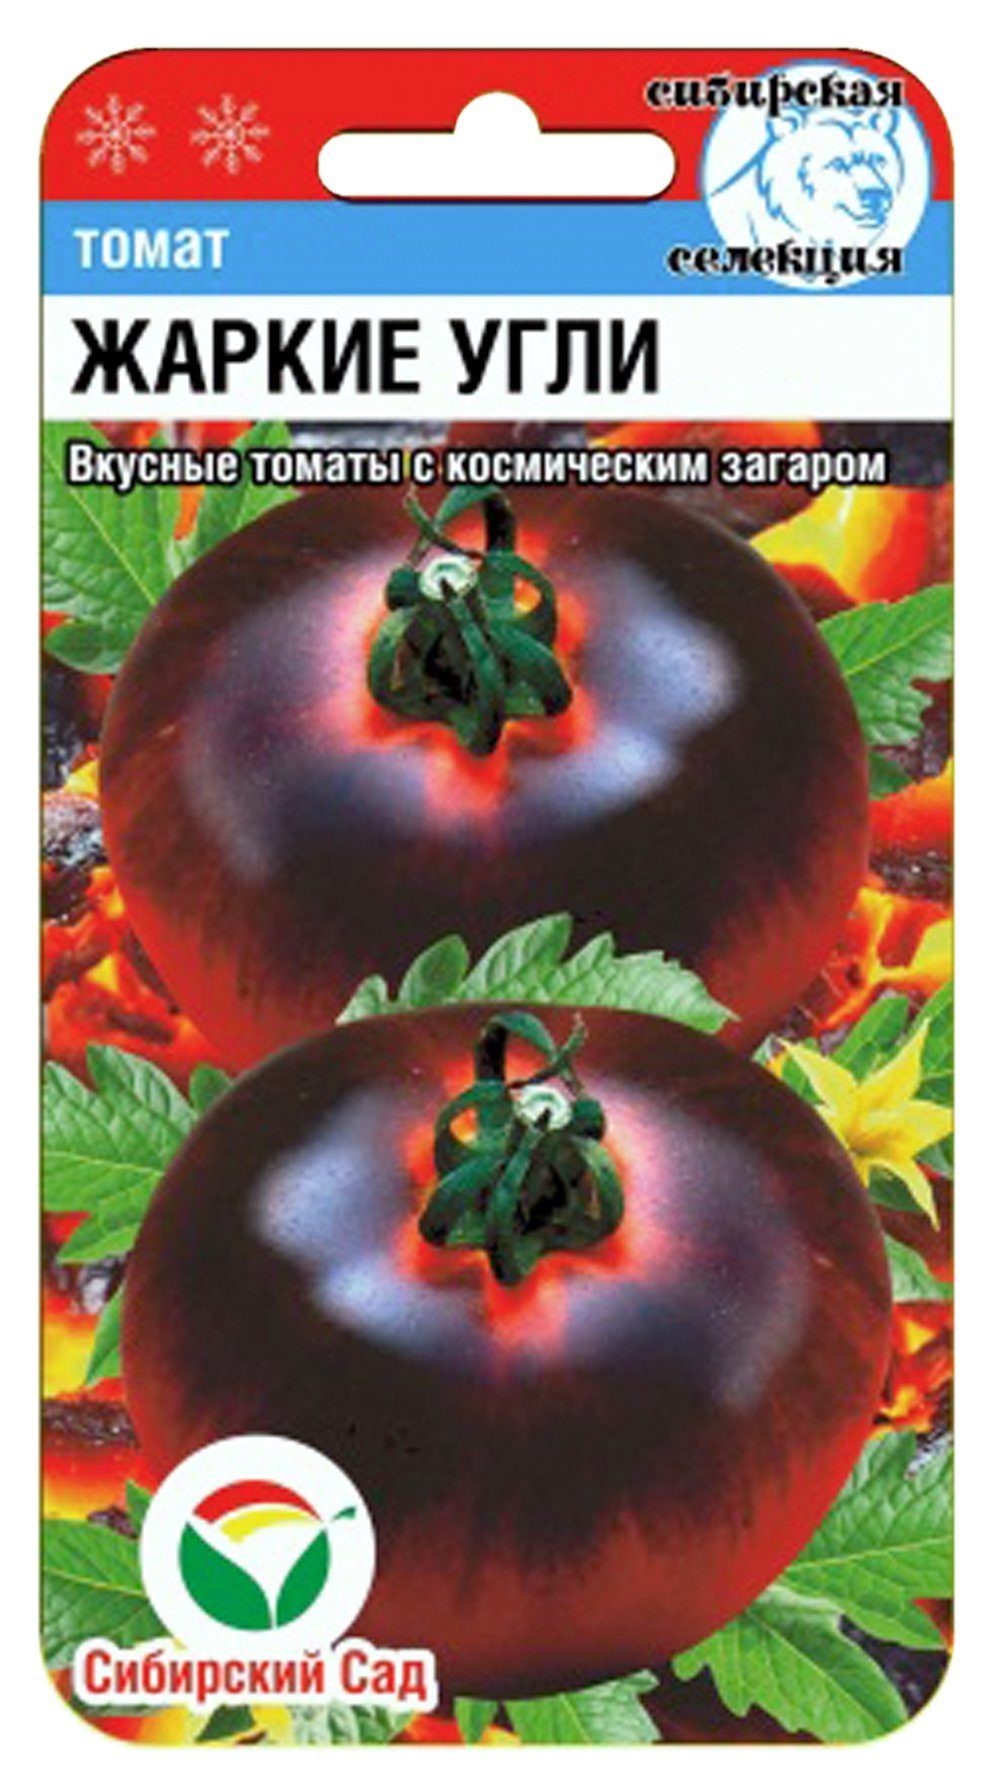 купить семена сибирский сад от производителя